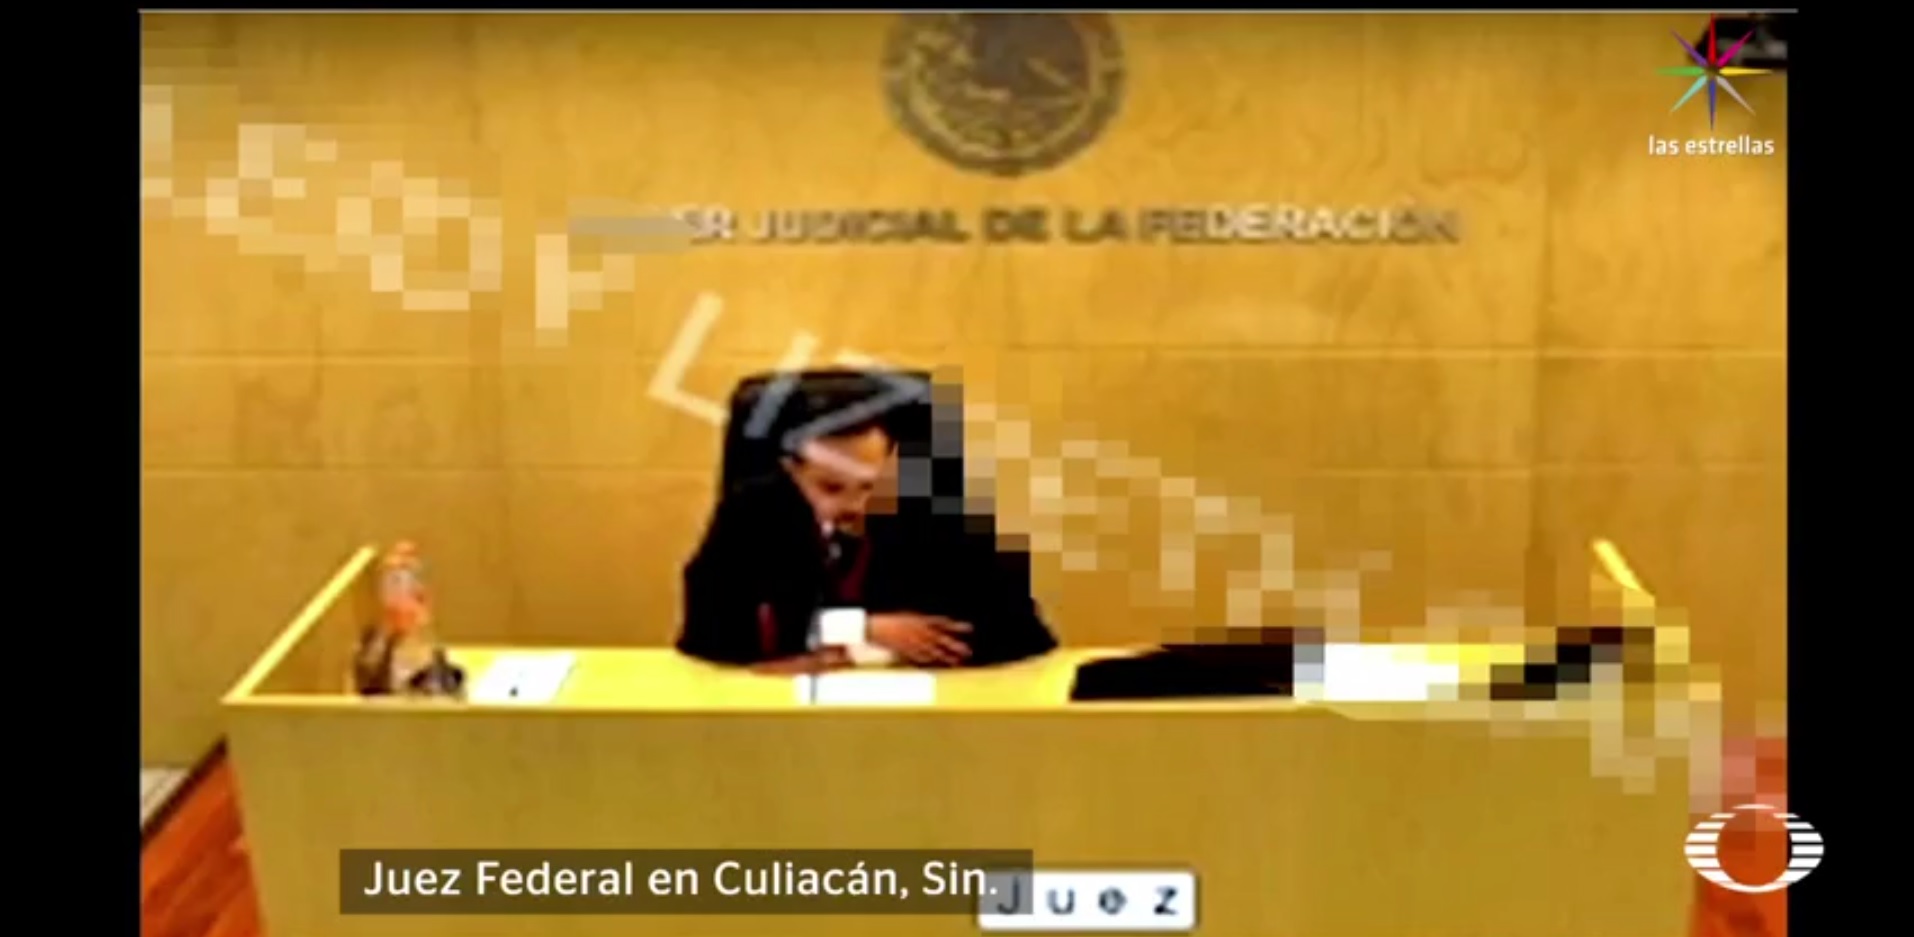 Estimar a Esparragoza Monzón 'como de alta peligrosidad viola el principio de presunción de inocencia', asegura el juez. (Noticieros Televisa)